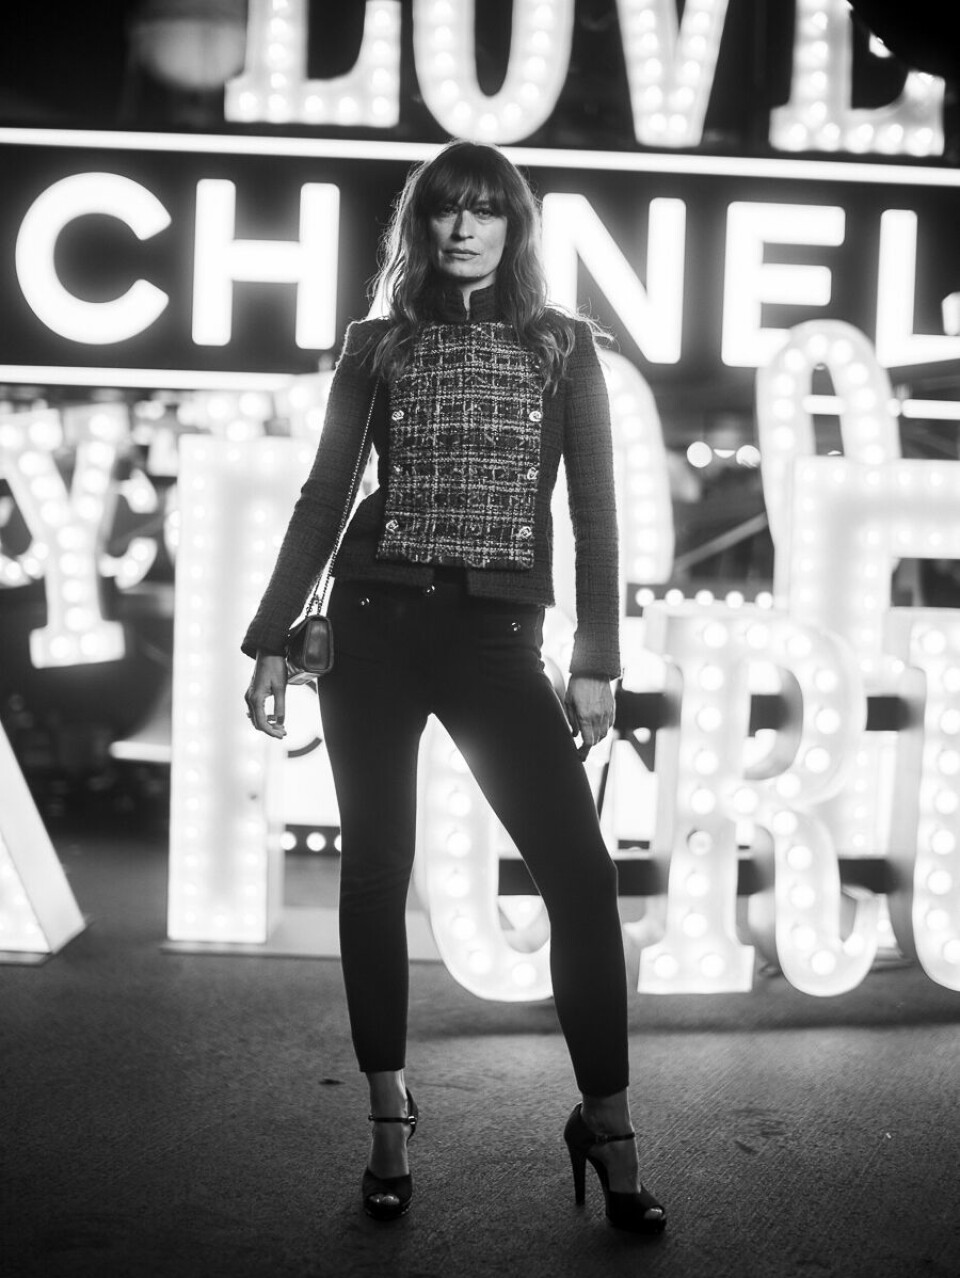 Caroline De Maigrets LA-favoritt er Guerilla Tacos i Downtown. Her er hun på Chanels visning av cruisekolleksjonen 23/24 i Los Angeles.